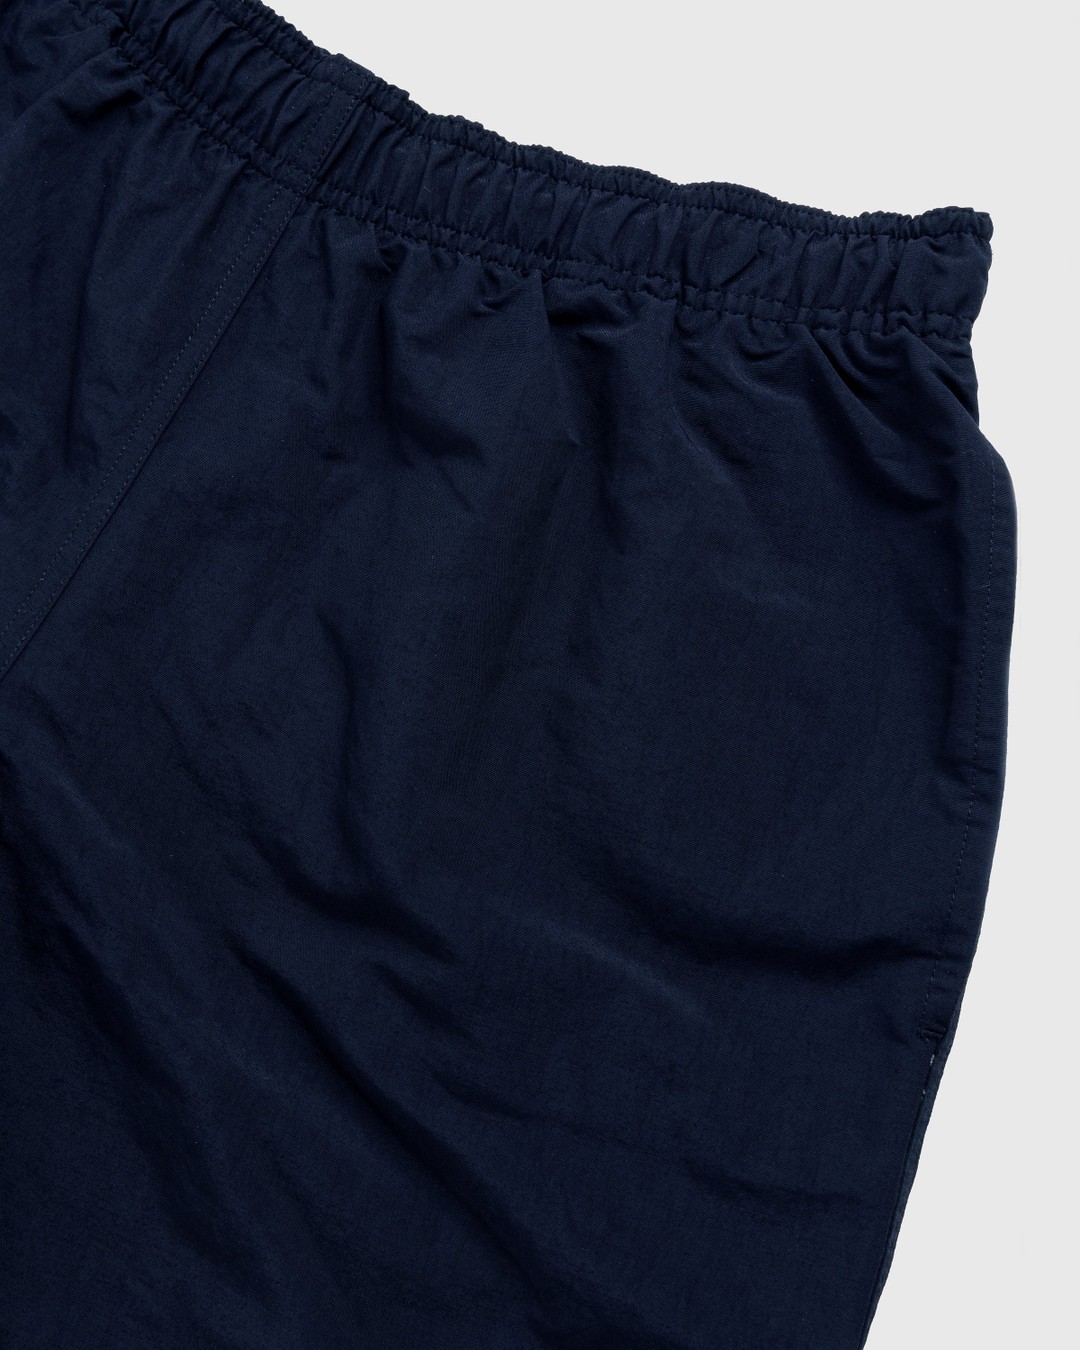 RUF x Highsnobiety – Water Shorts Navy - Shorts - Blue - Image 5